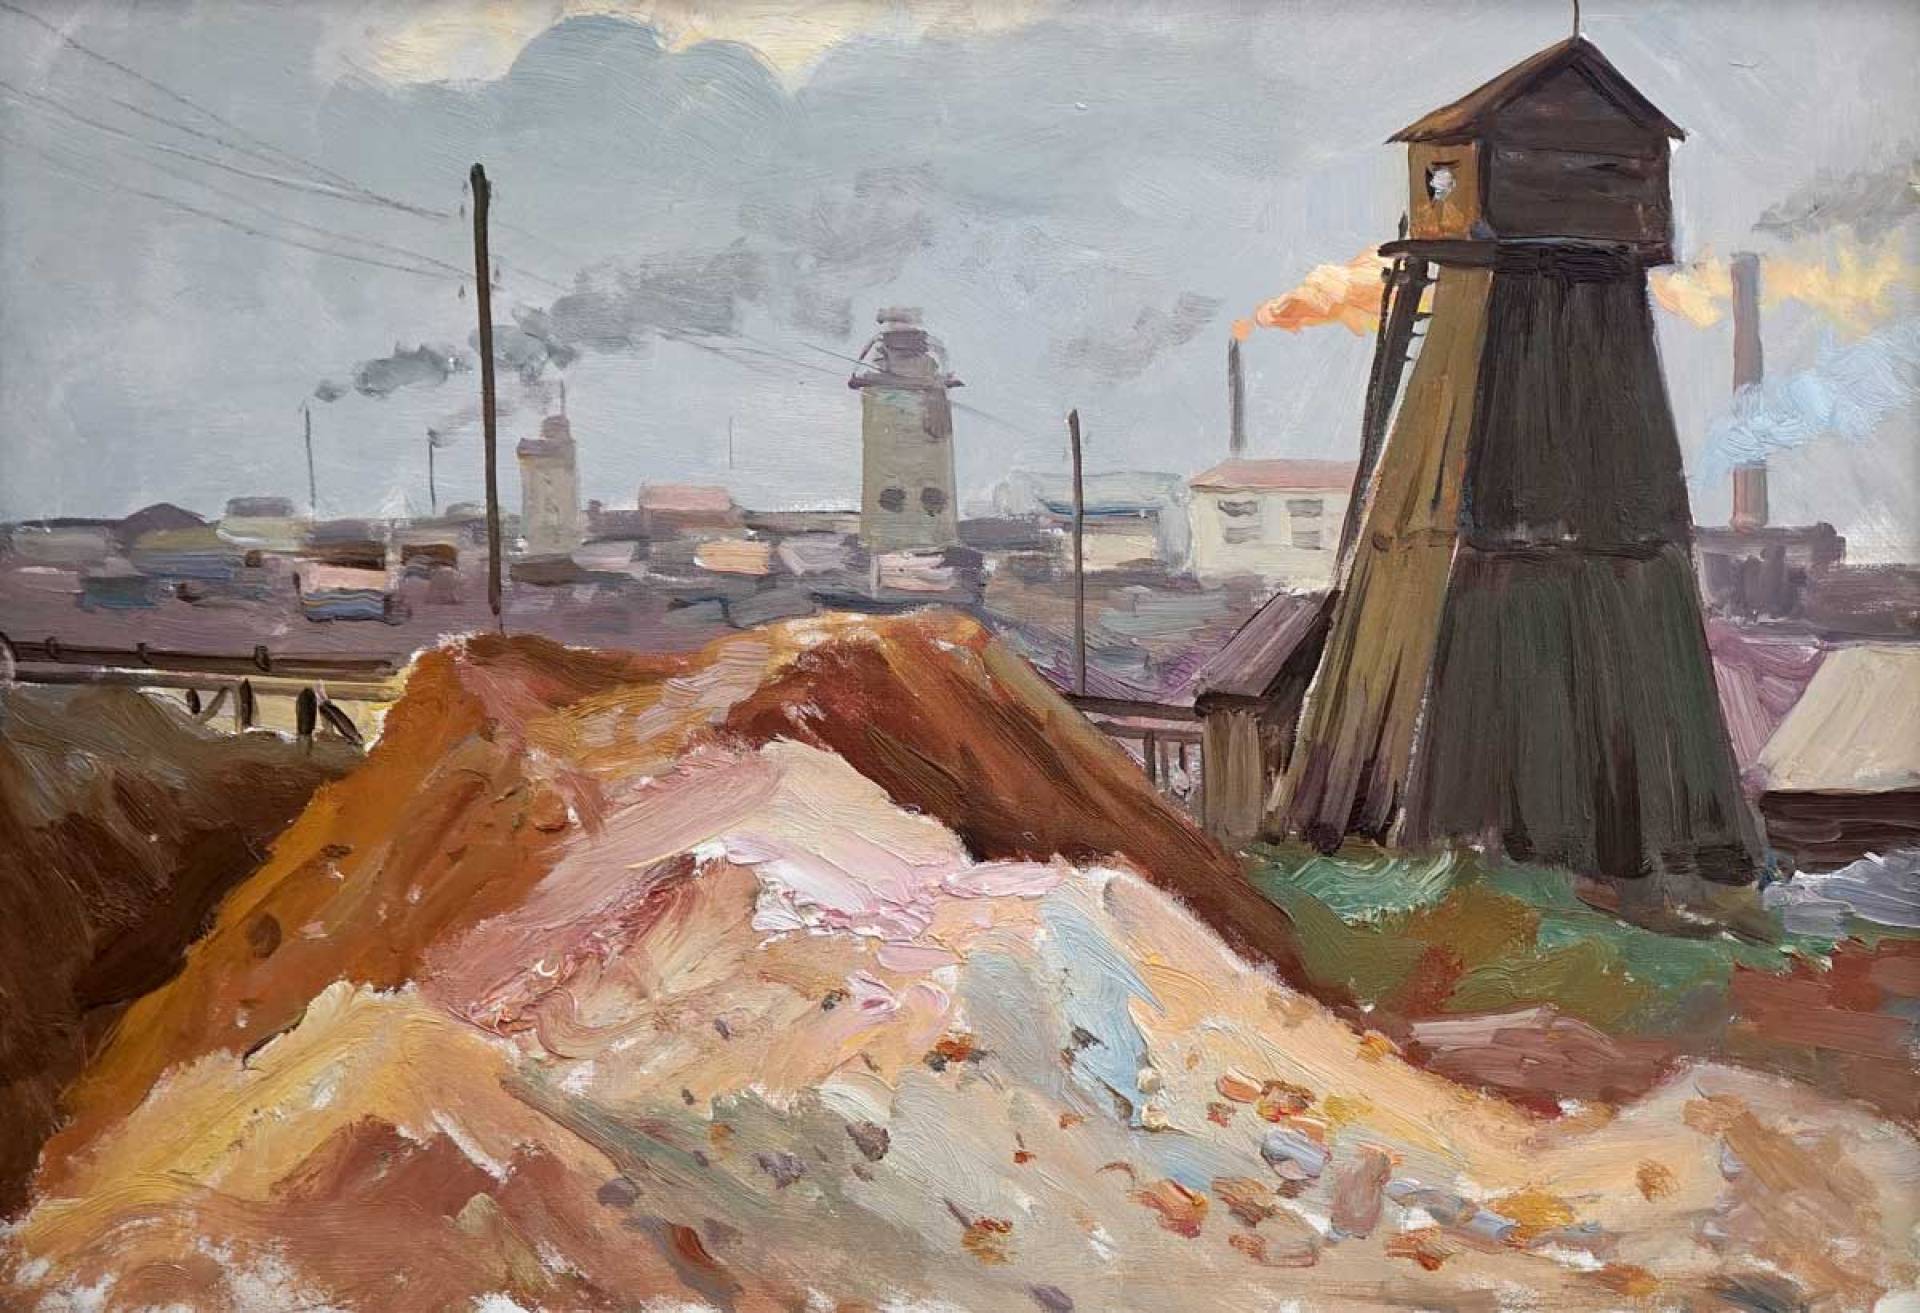 Tower - 1, Boris Glushkov, Buy the painting Oil